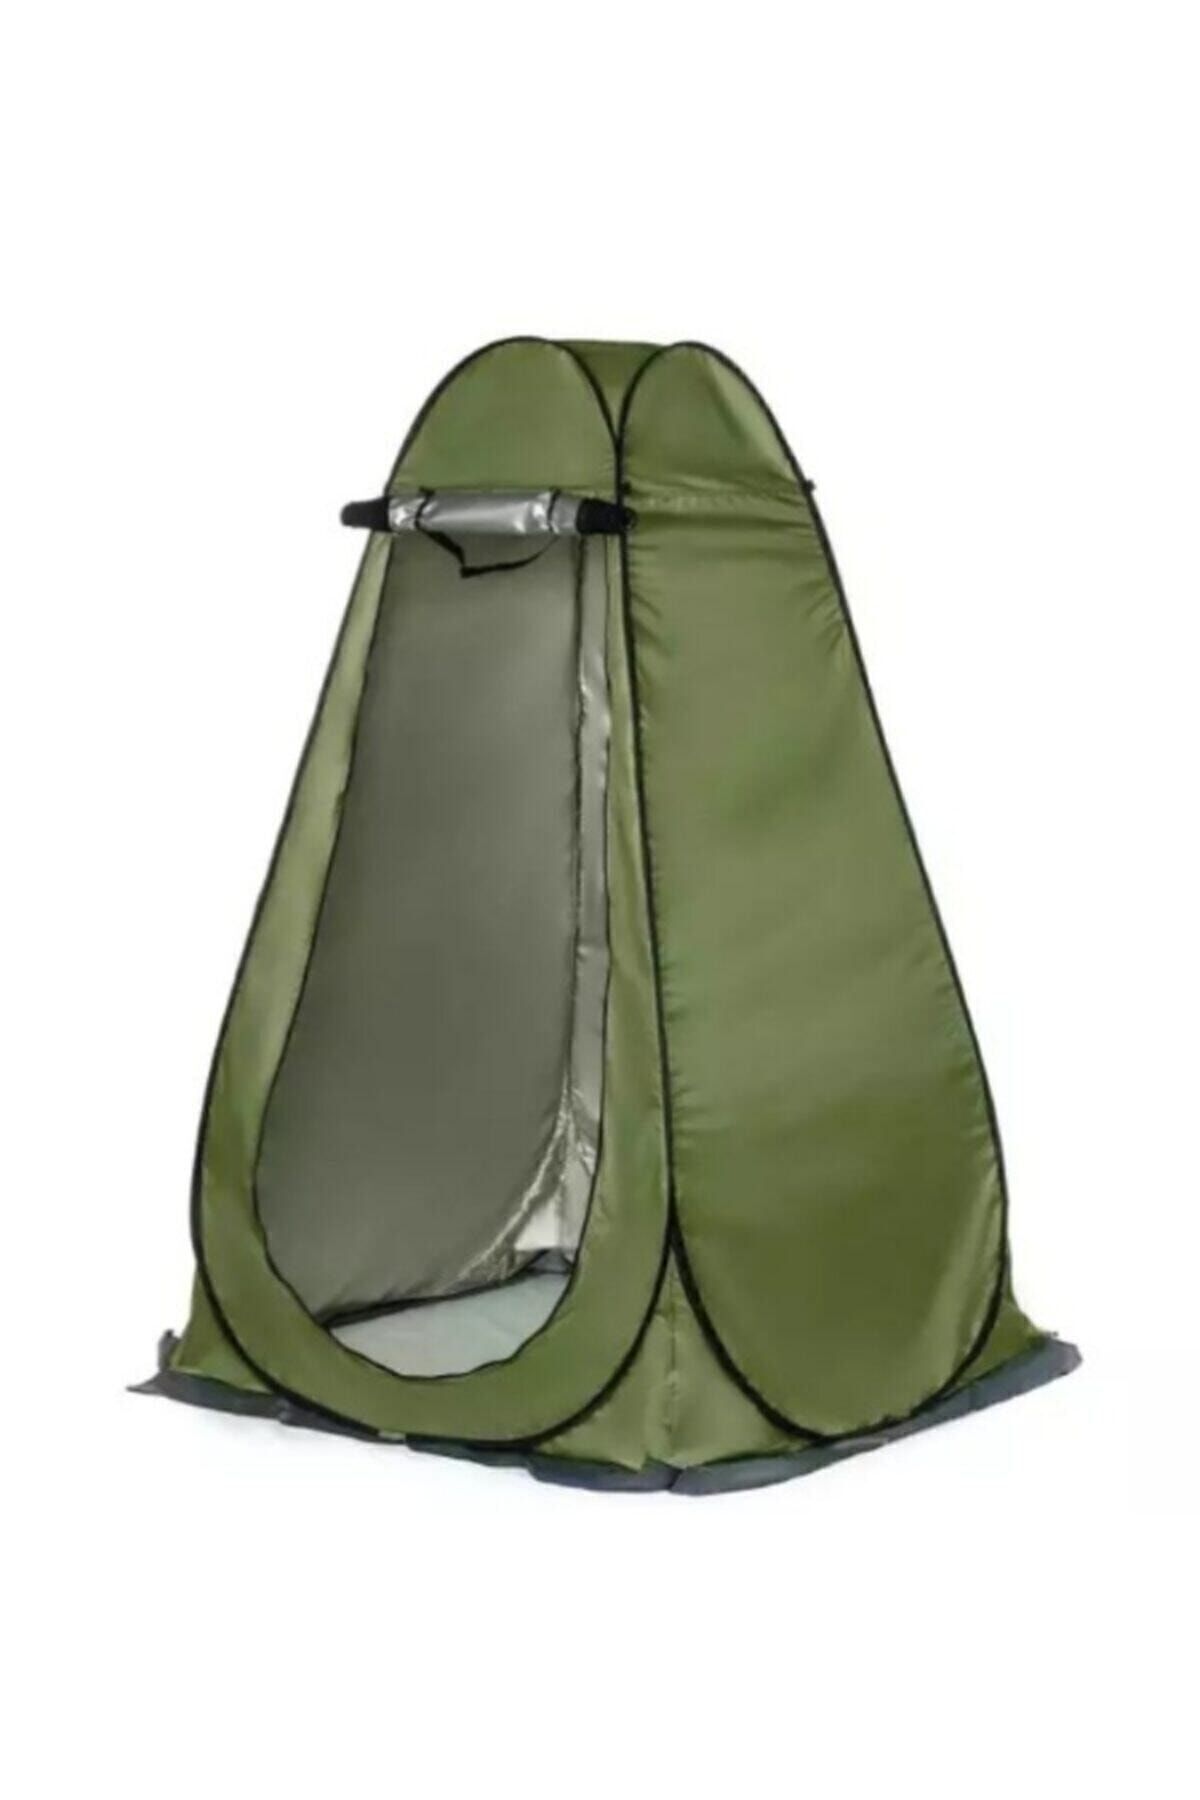 Genel Markalar Kamp Alanı Duş Giyinme Wc Çadırı Fotoğrafcı Prova Kabini Yeşil